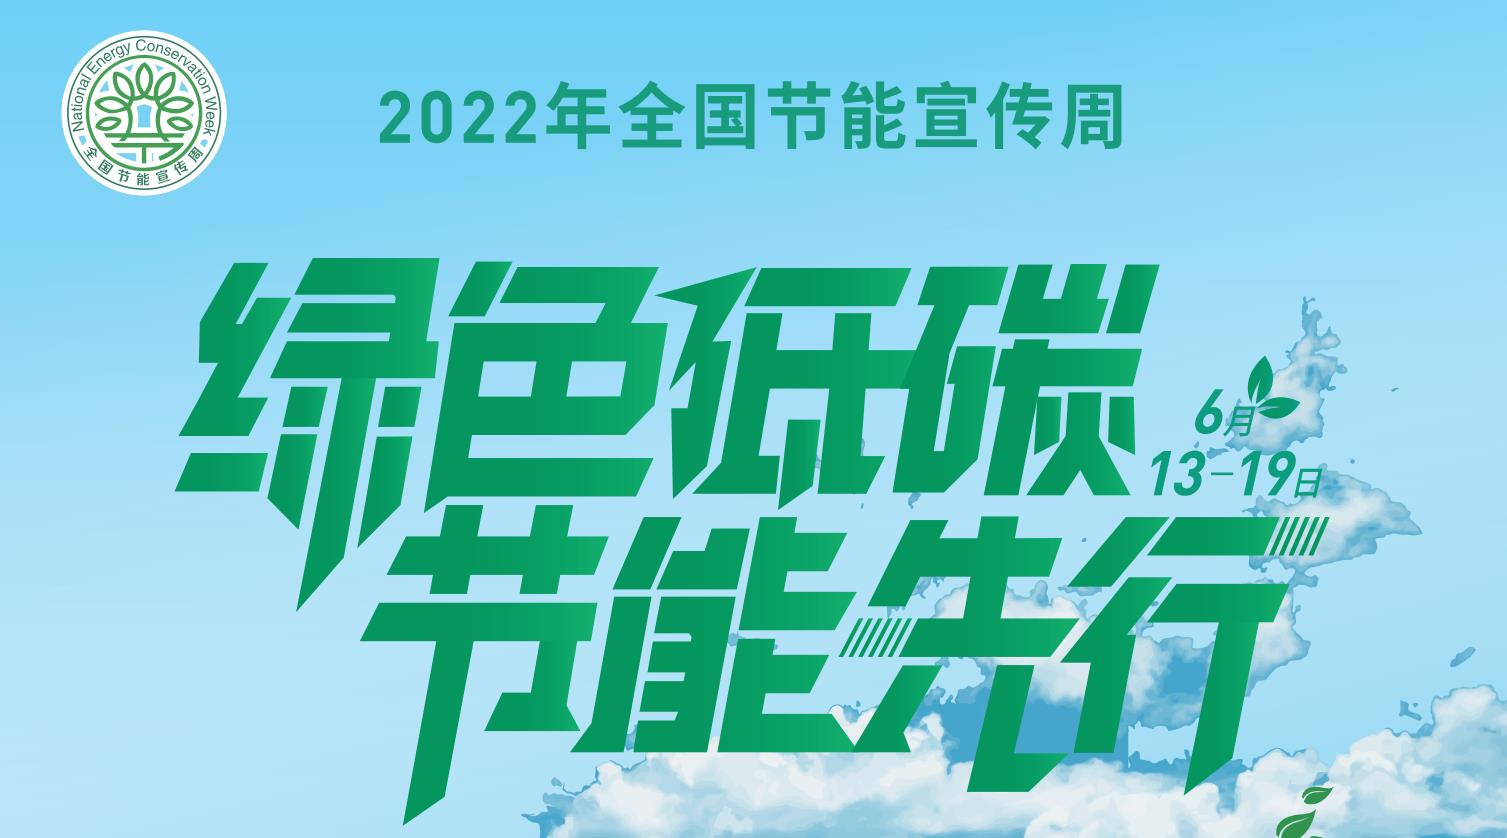  2022年全国节能宣传周招贴画电子版发布 